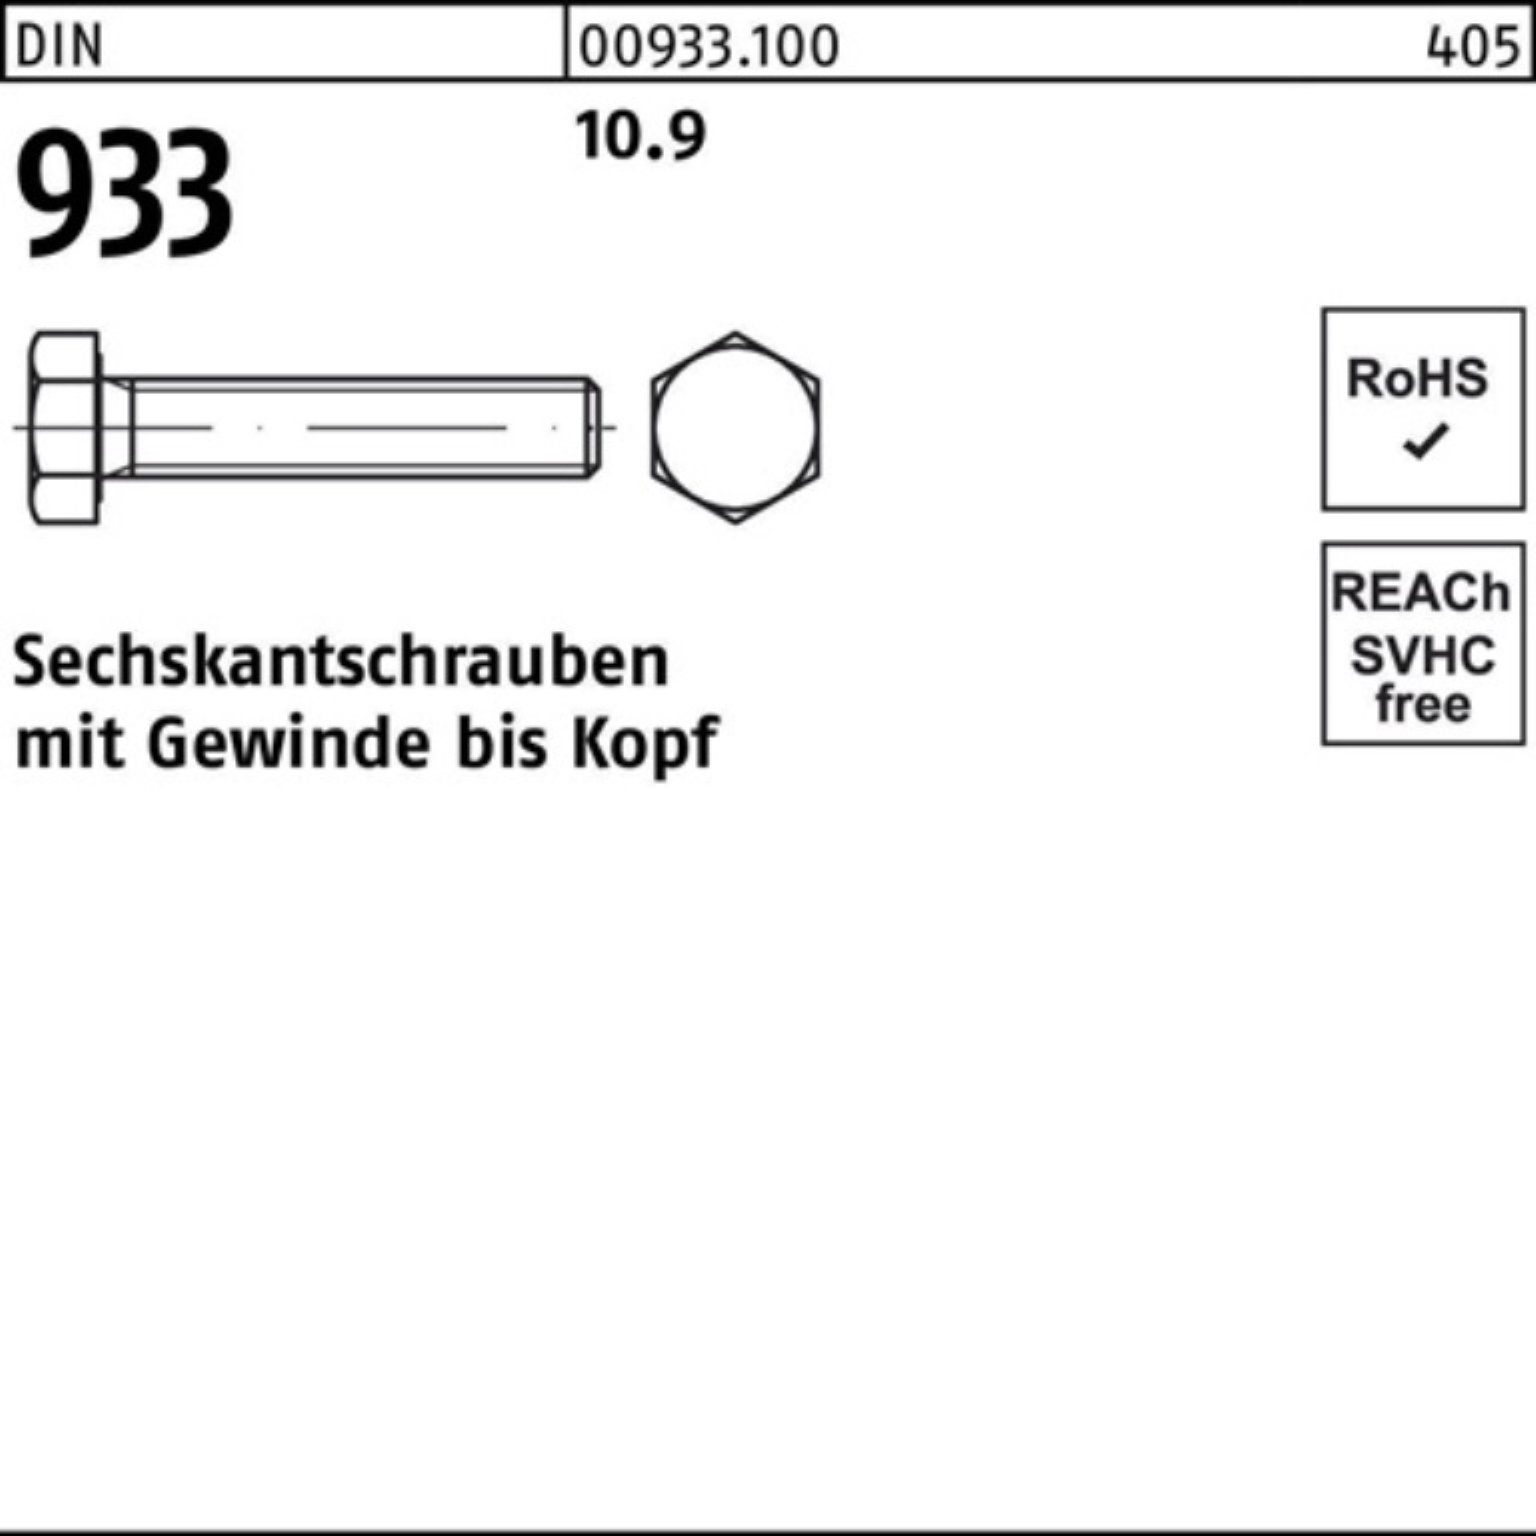 Stück 100er Sechskantschraube M8x 10.9 DIN Sechskantschraube Pack 93 933 Reyher VG 180 100 DIN